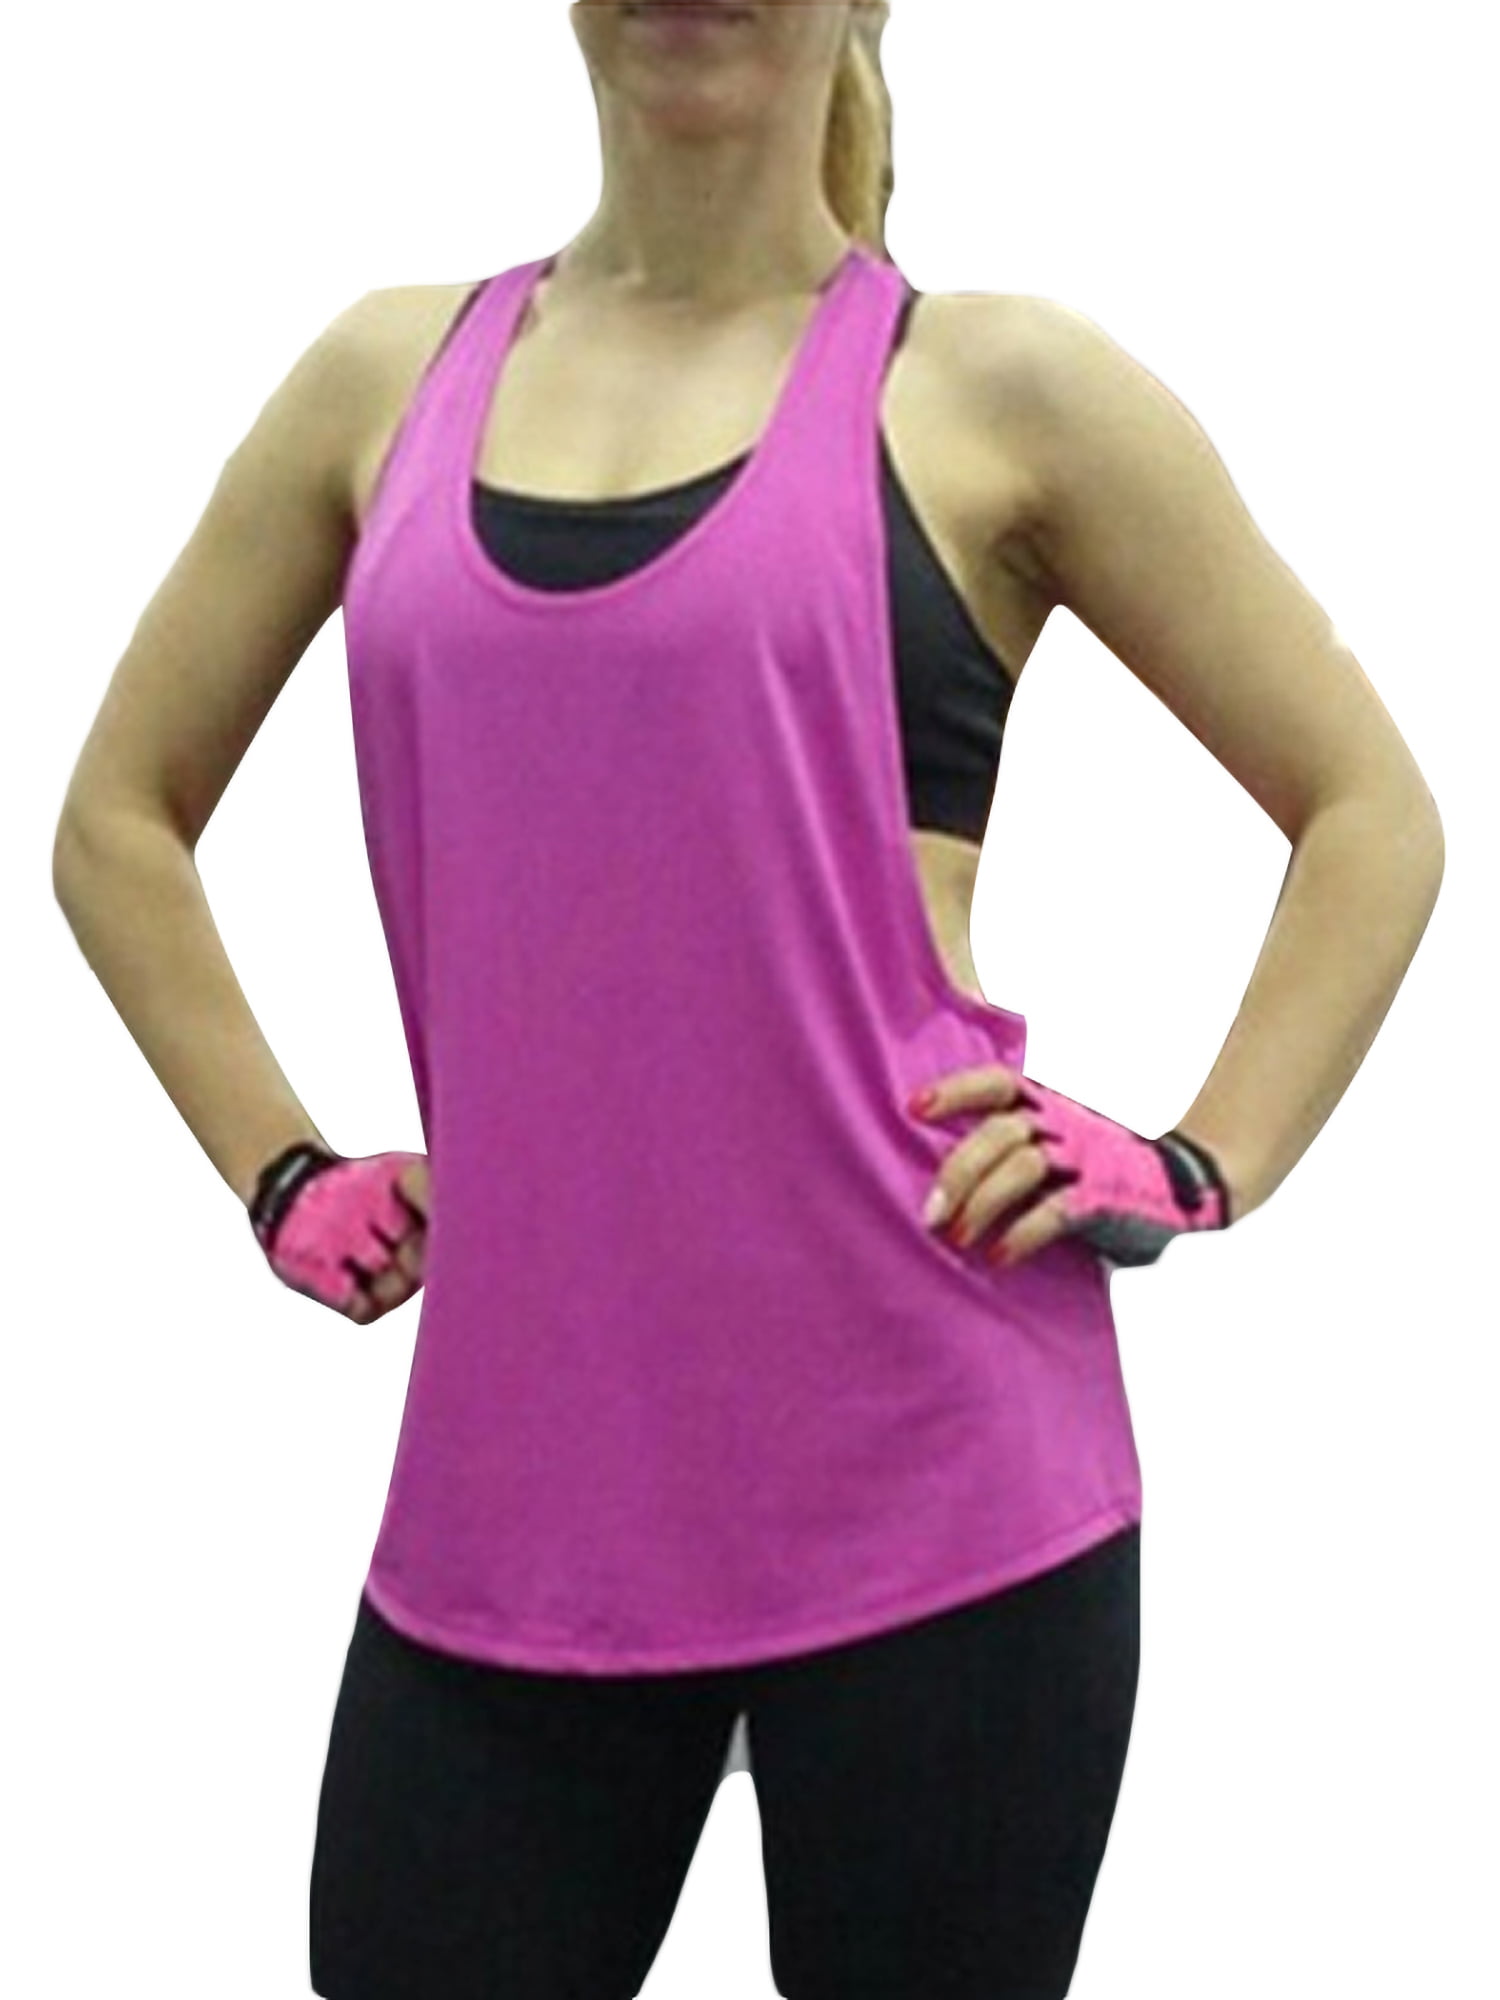 Rockia Yoga Tank Top Spaghetti Strap V-Neck Vest Sleeveless Cami Irregular Hem Summer Running Activewear Tees